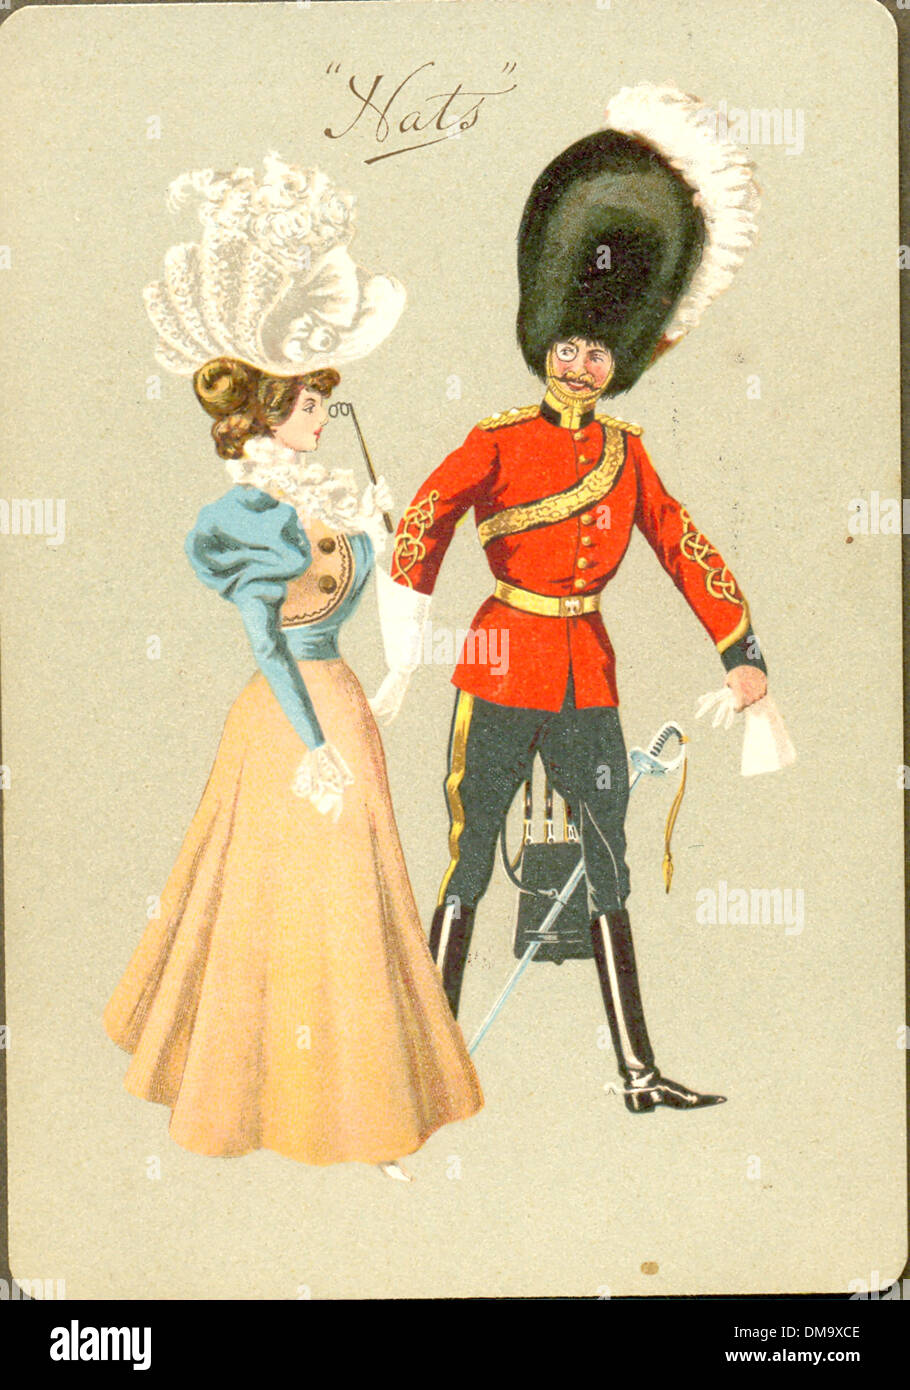 Humorvolle Postkarte von Guards Officer und Lady, die ihre Hüte um 1905 vergleicht Stockfoto